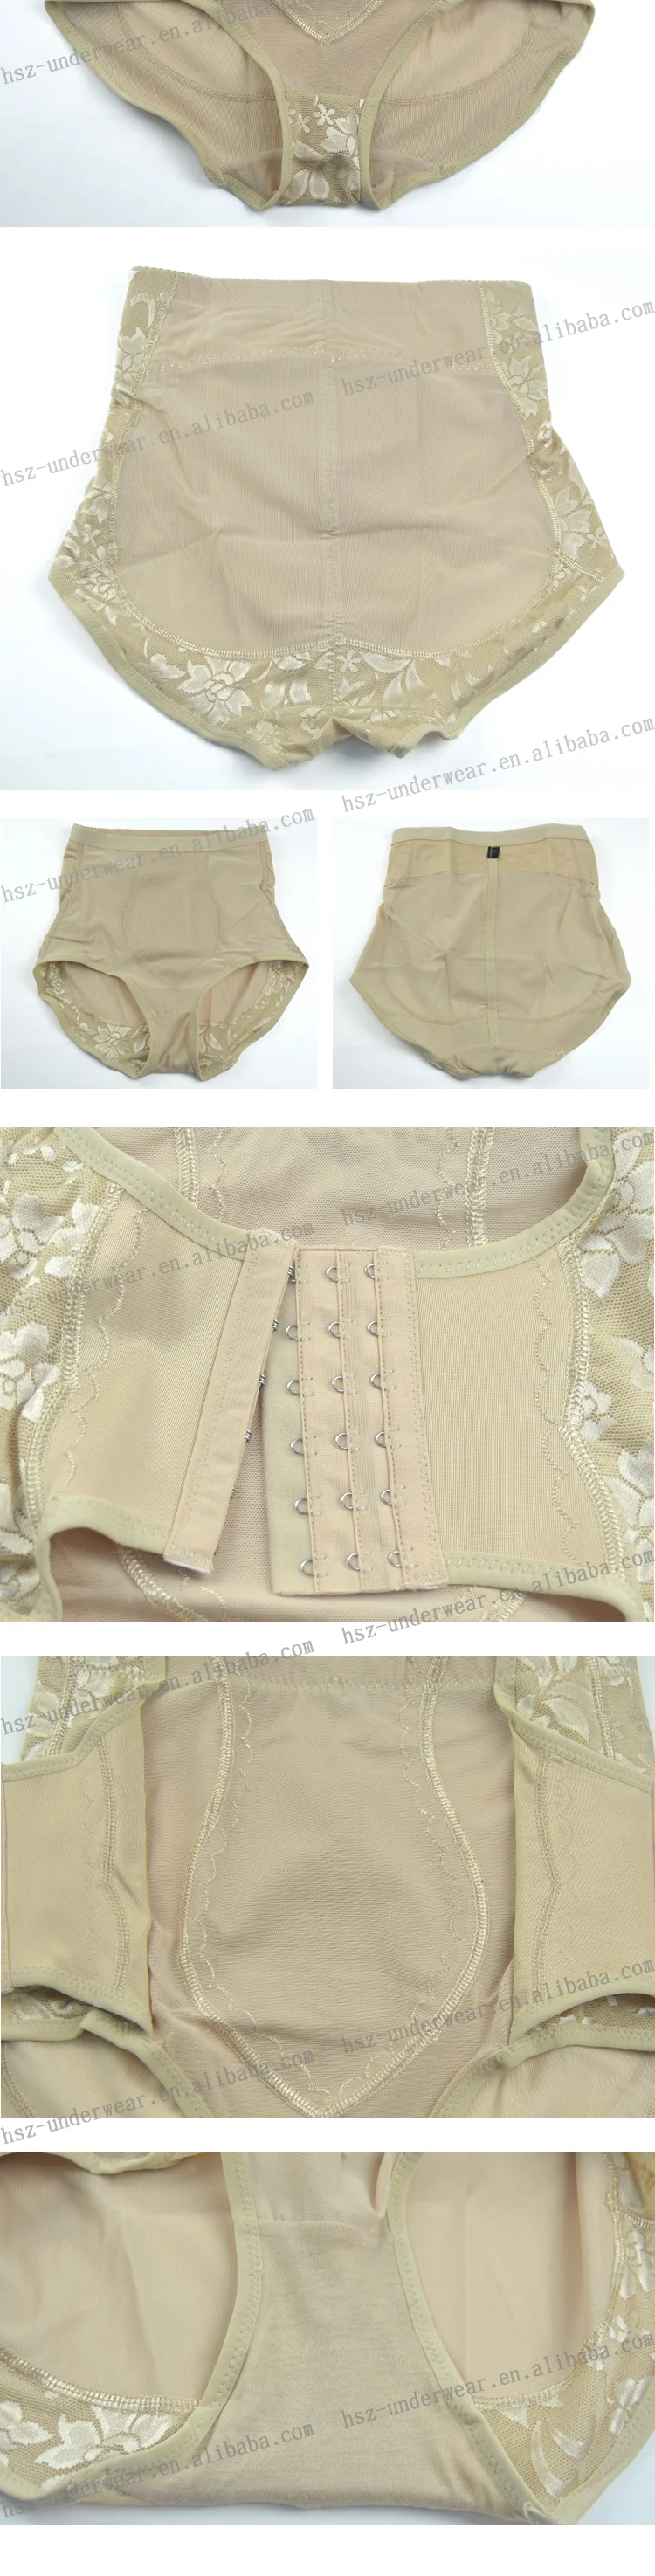 Hsz 8993 Fashion Design Mature Women In Panties Lace Panties Old Women